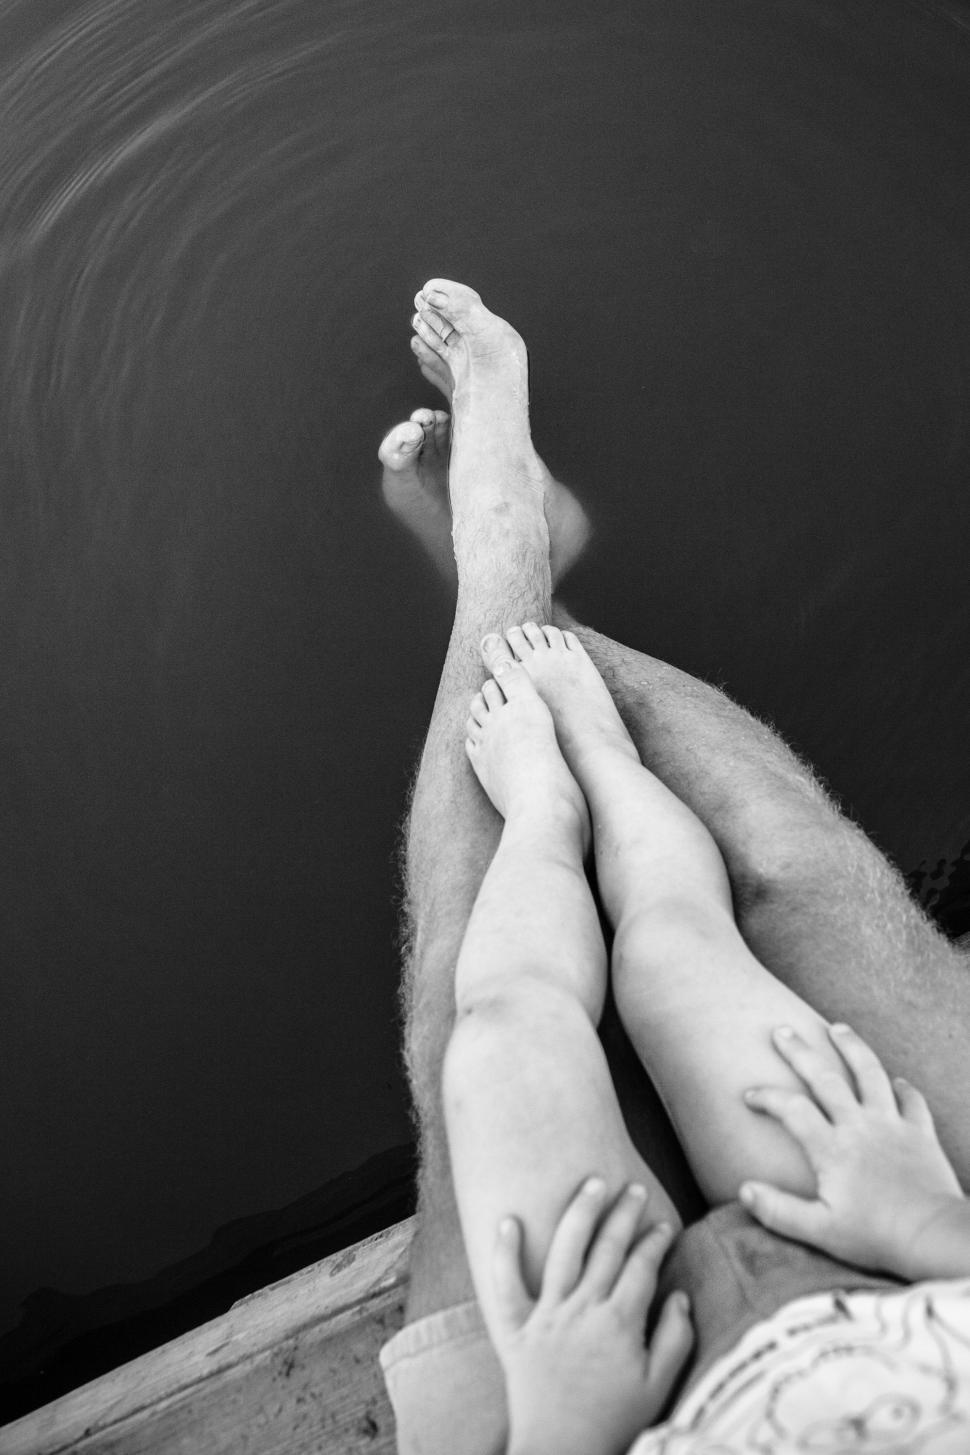 Free Image of Couple Sitting on Boat 